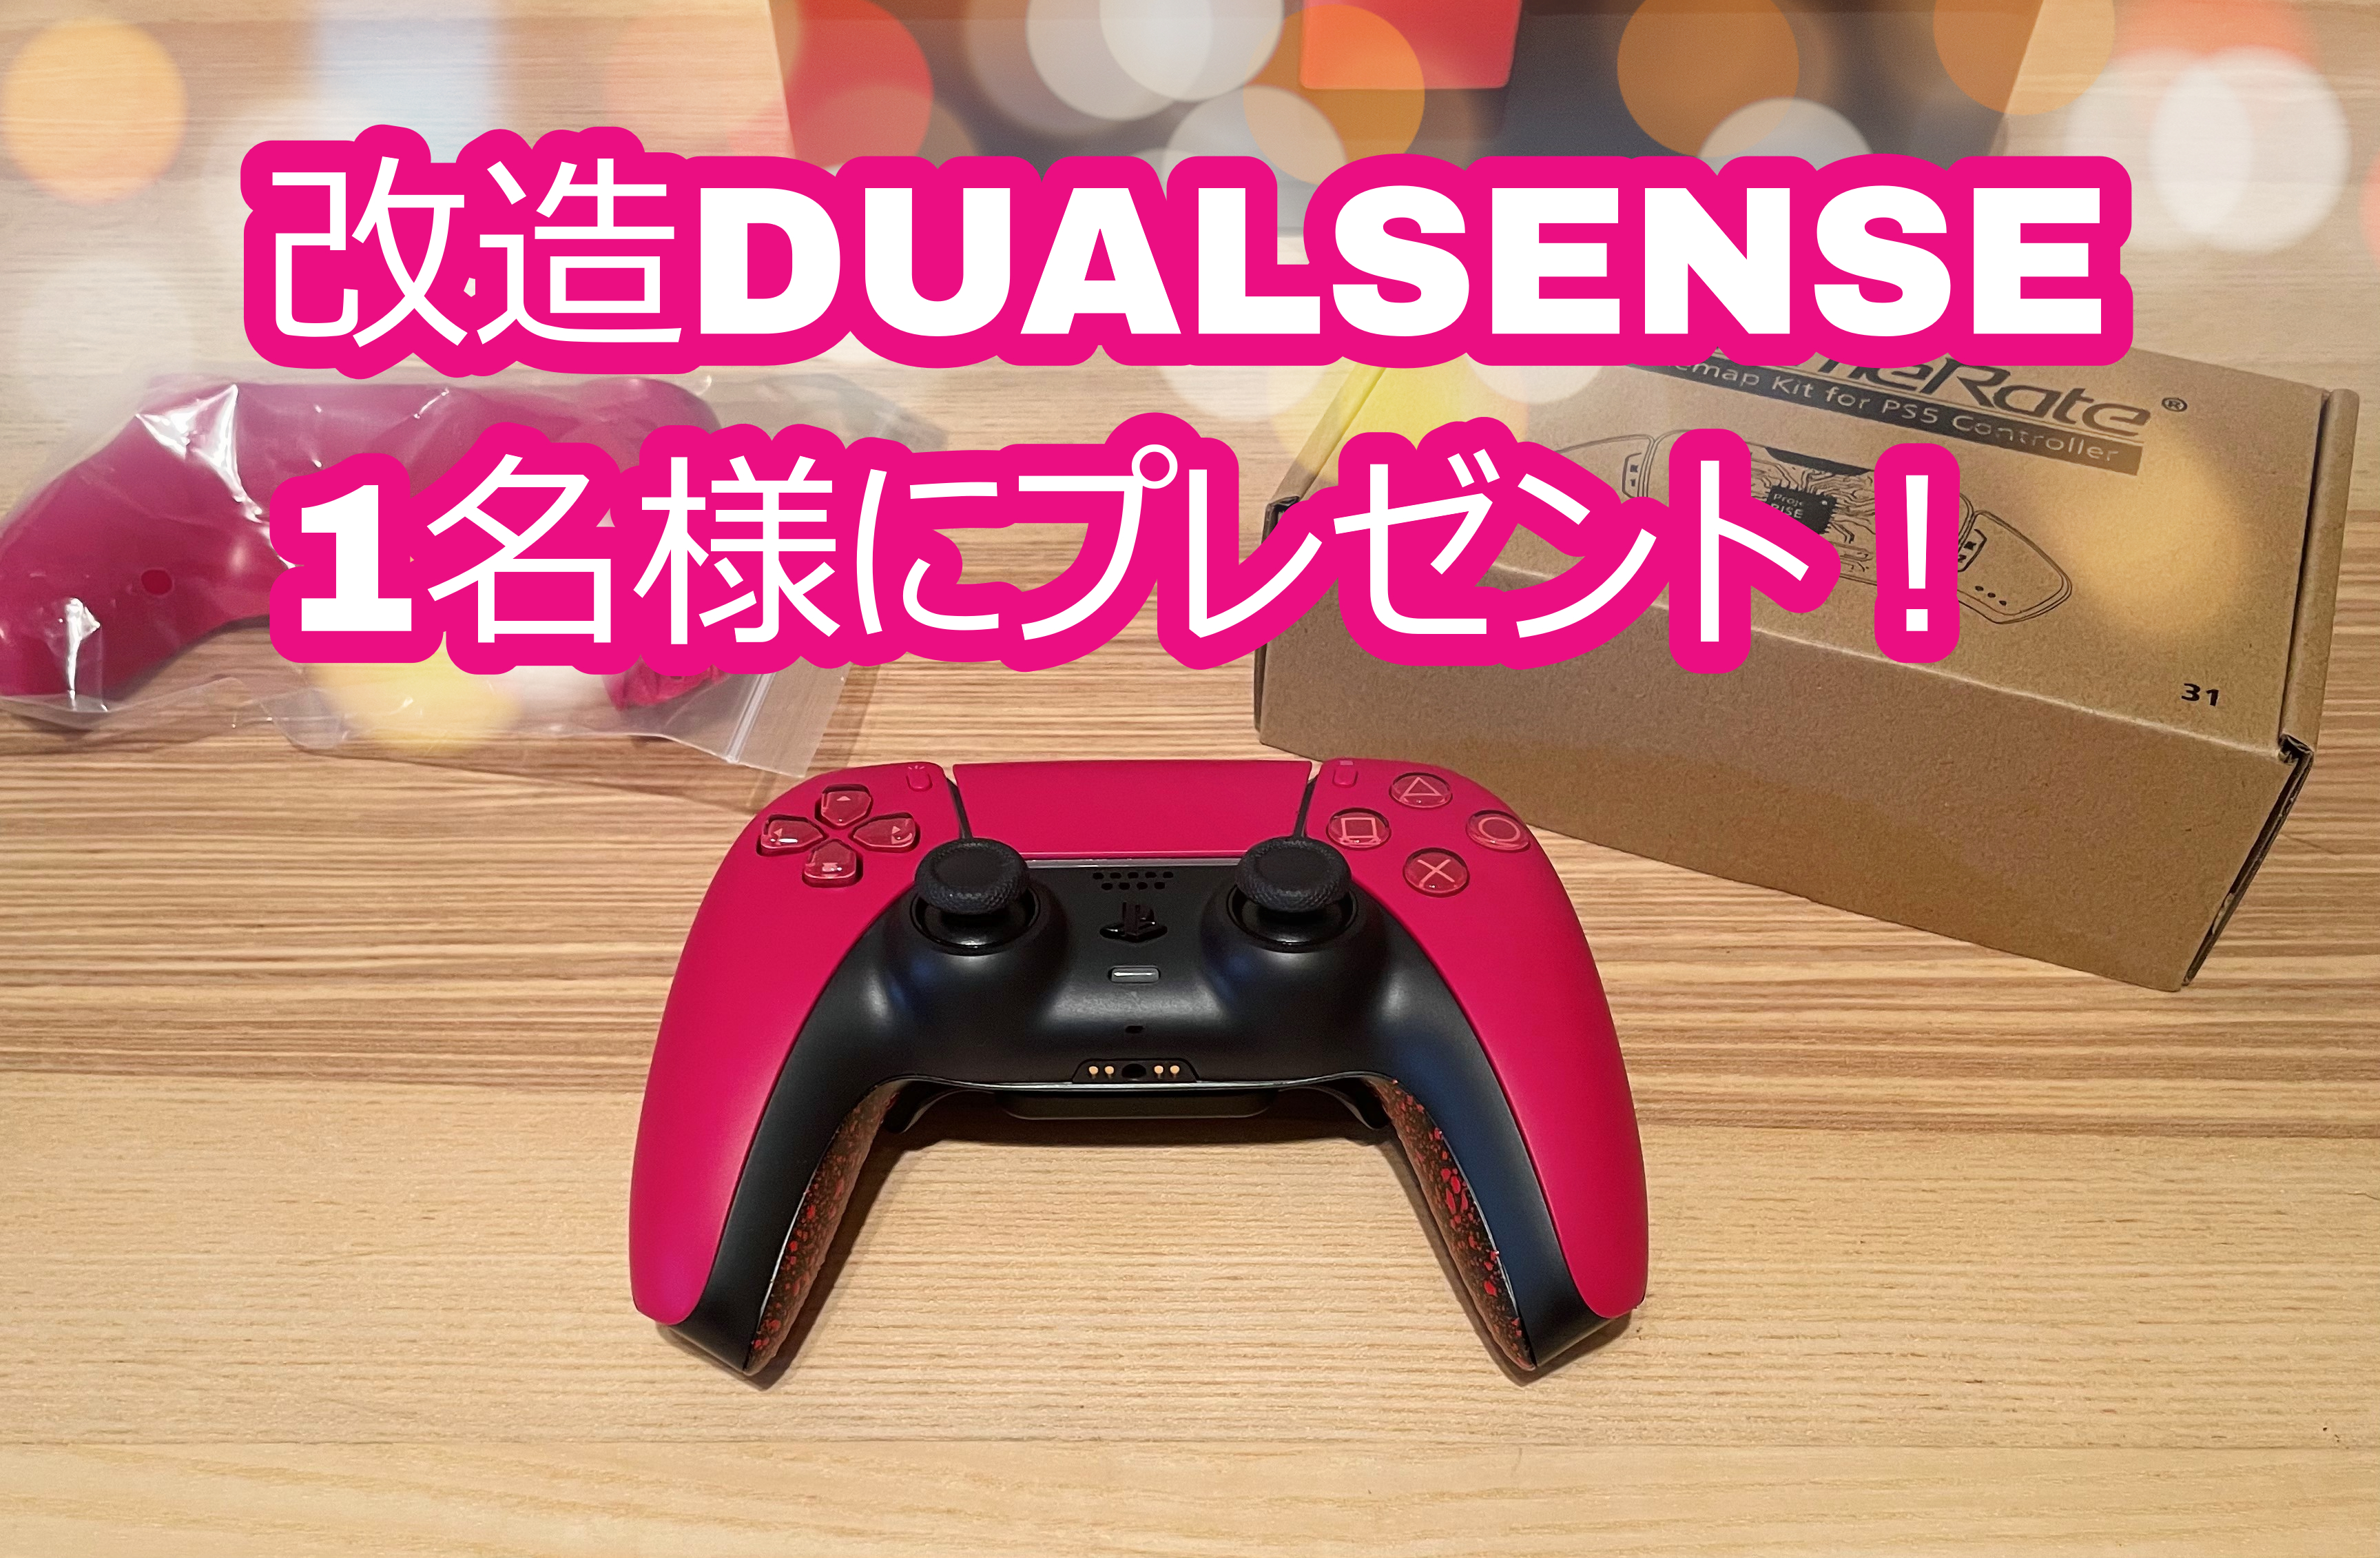 1名様にプレゼント】PS5コントローラー『DUALSENSE』を改造。eXtreme 